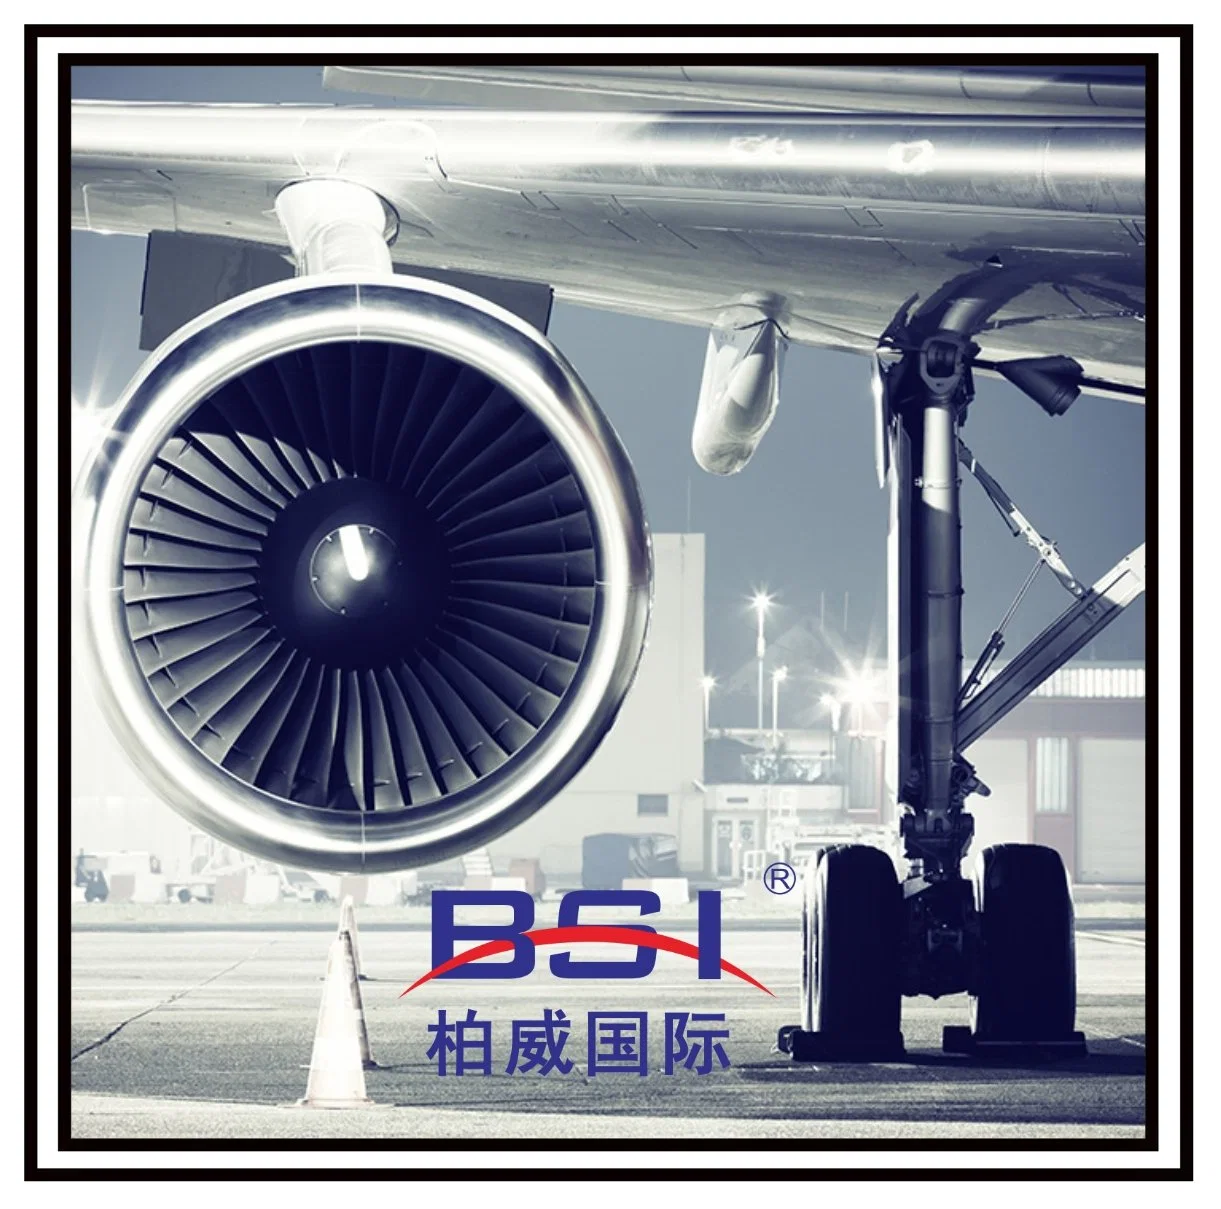 أفضل فوارة شحن للشحن الجوي في الصين